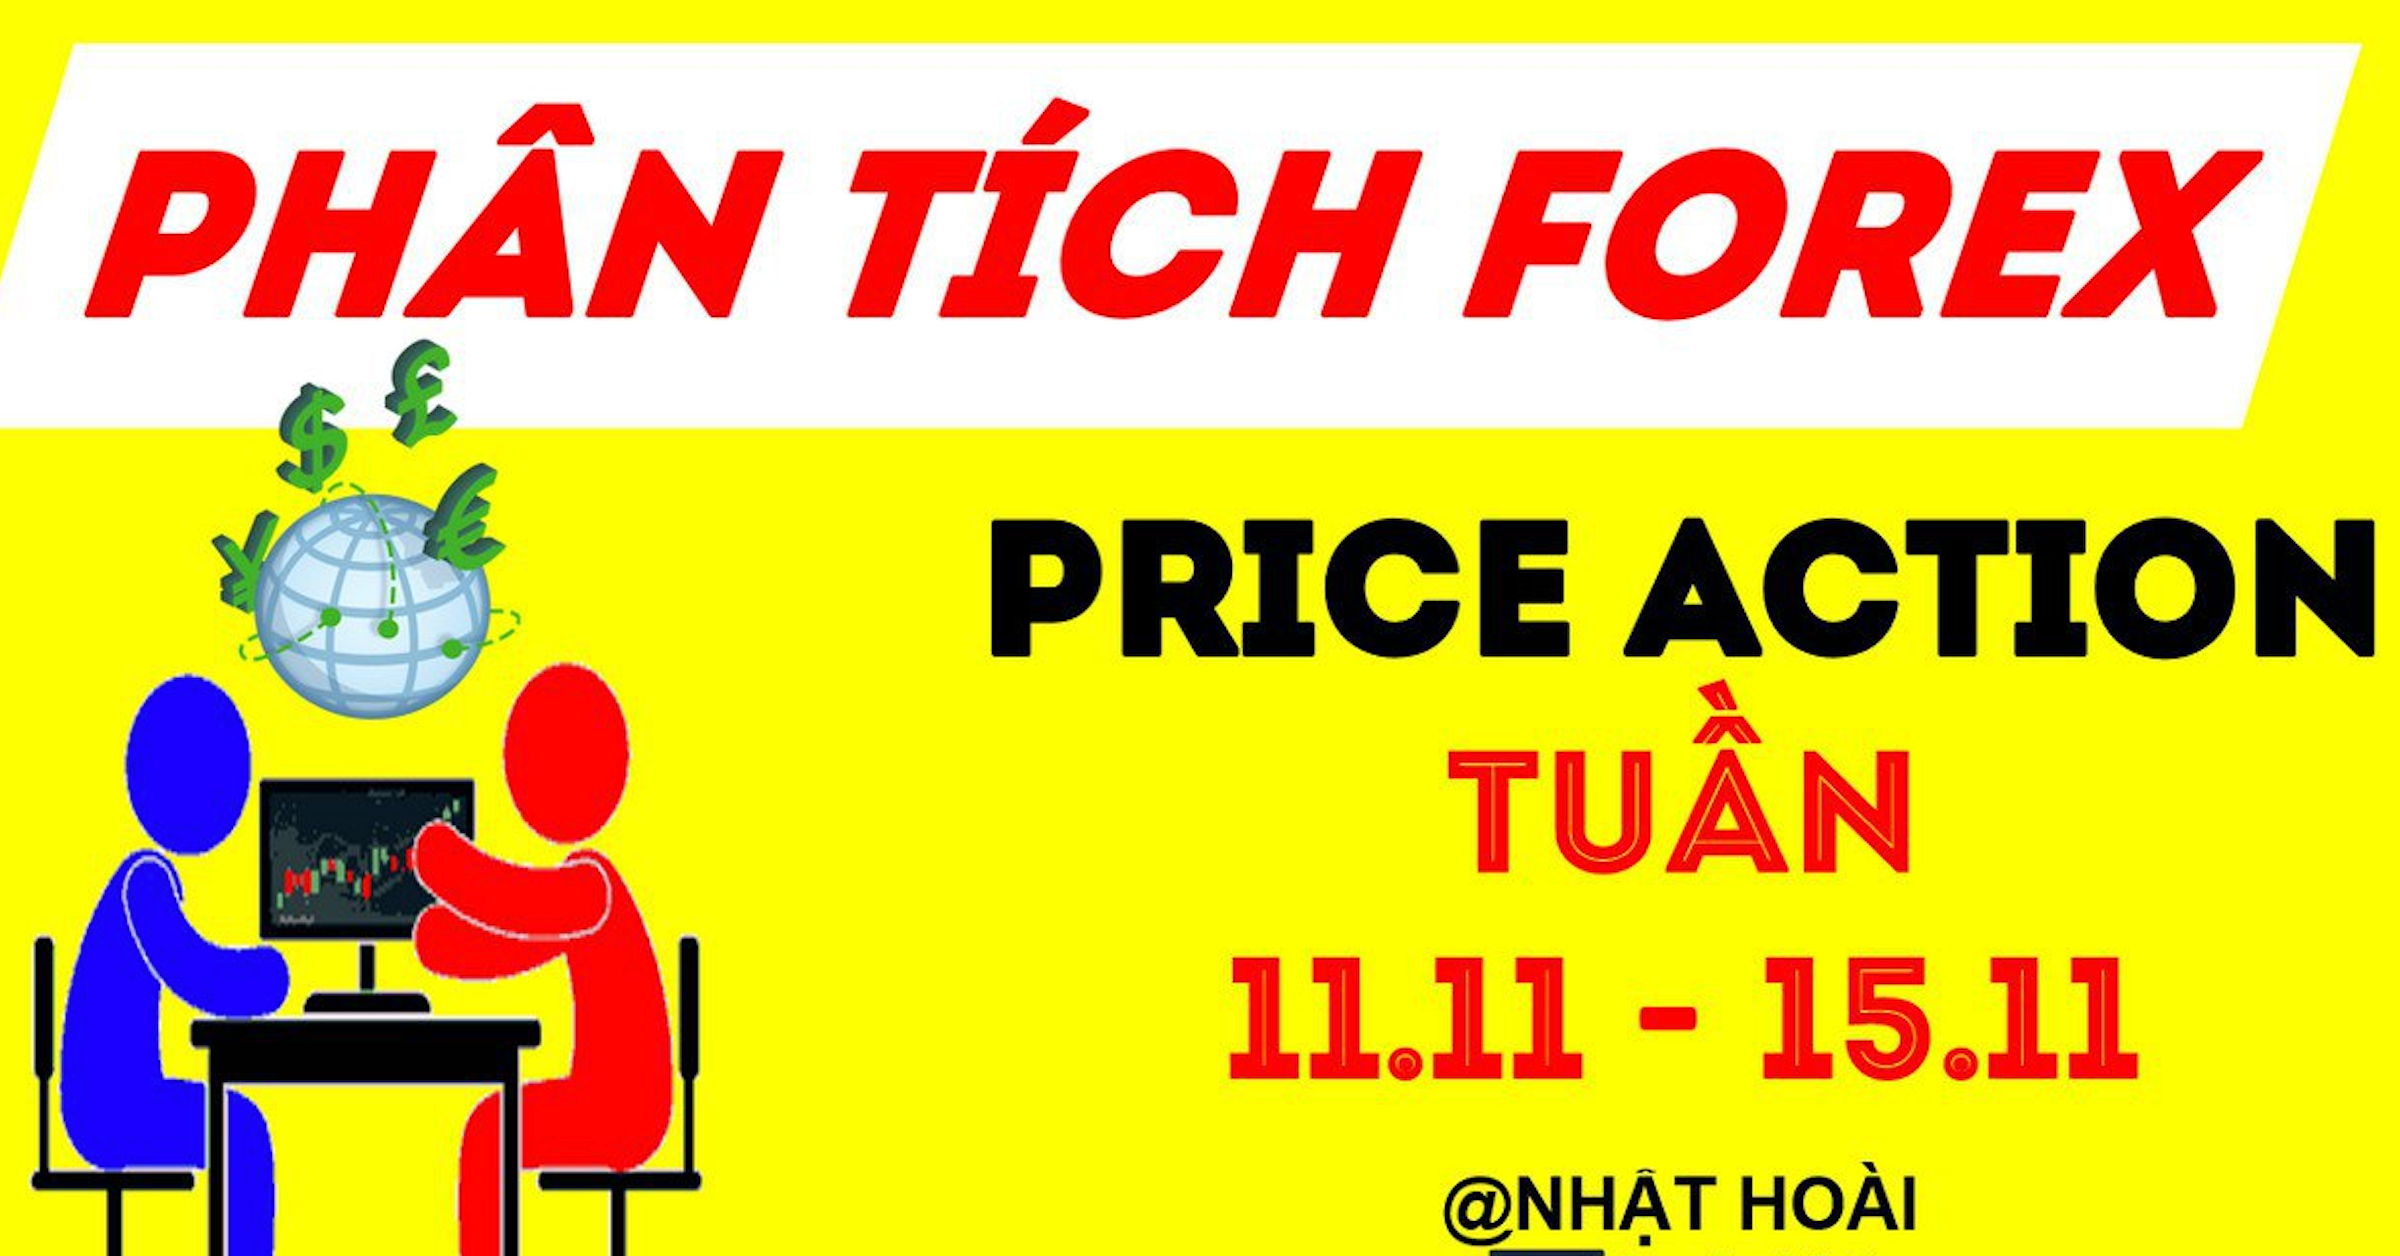 (Video Clip) Phân tích Forex theo Price Action tuần 11/11-15/11